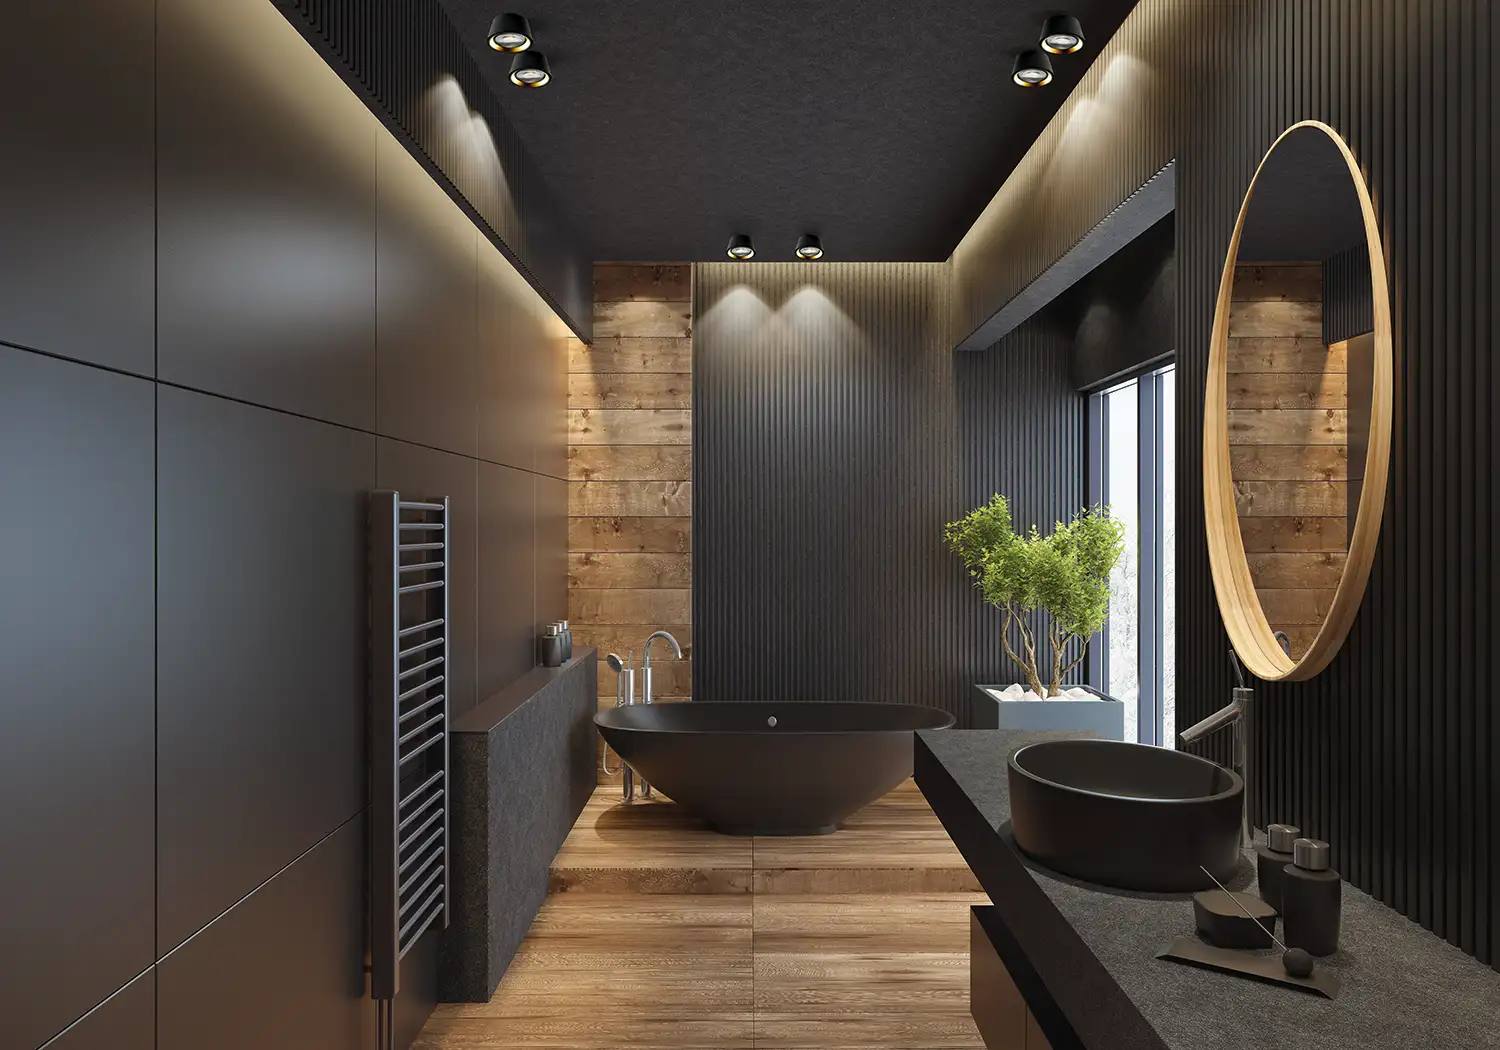 Ein Badezimmer mit schwarzen Wänden und Holzelementen, an der Decke Einbauleuchten 'Optic' von Light-Point